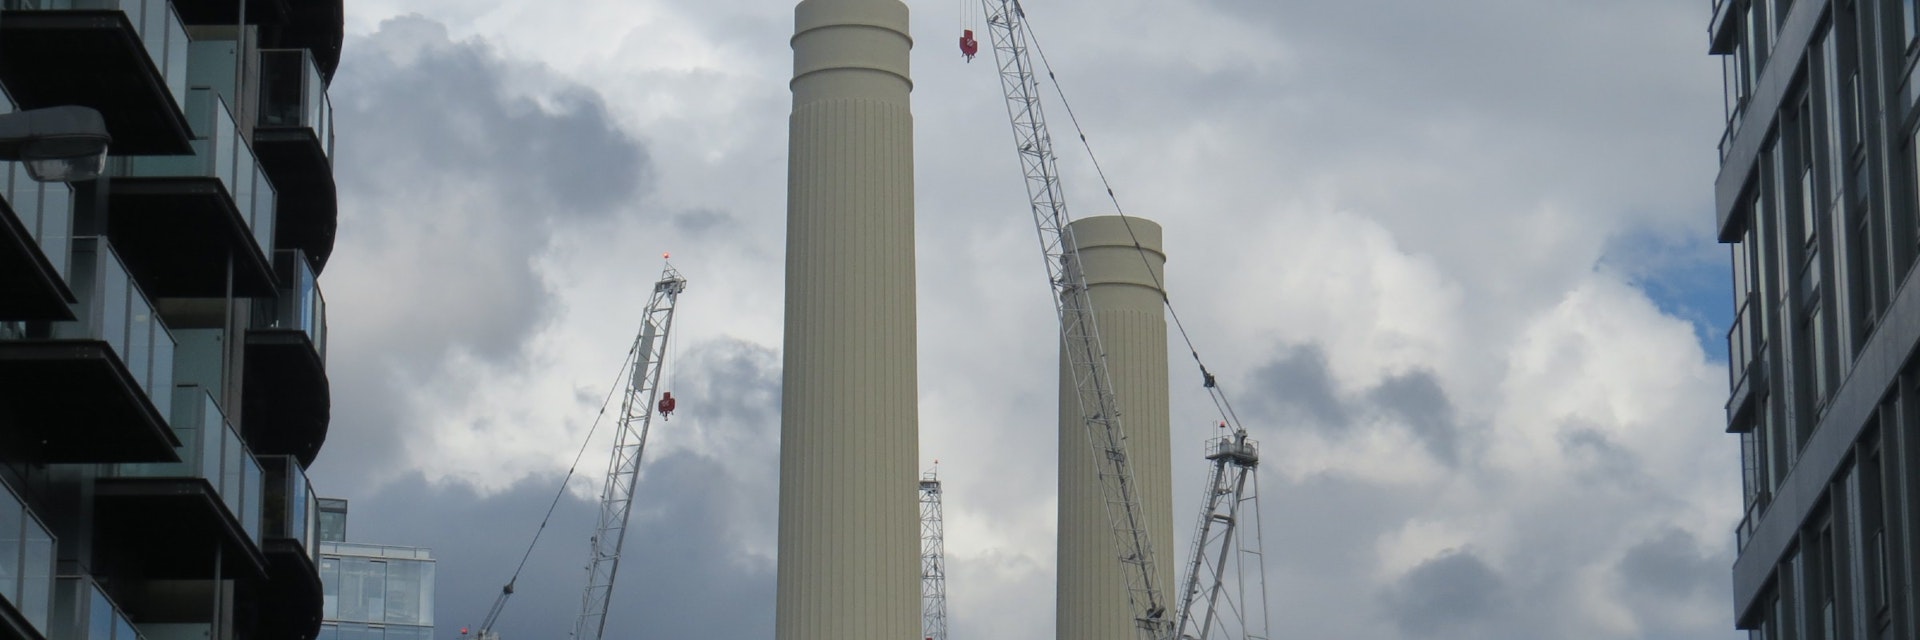 Battersea Power Station chimneys seen between two buildings